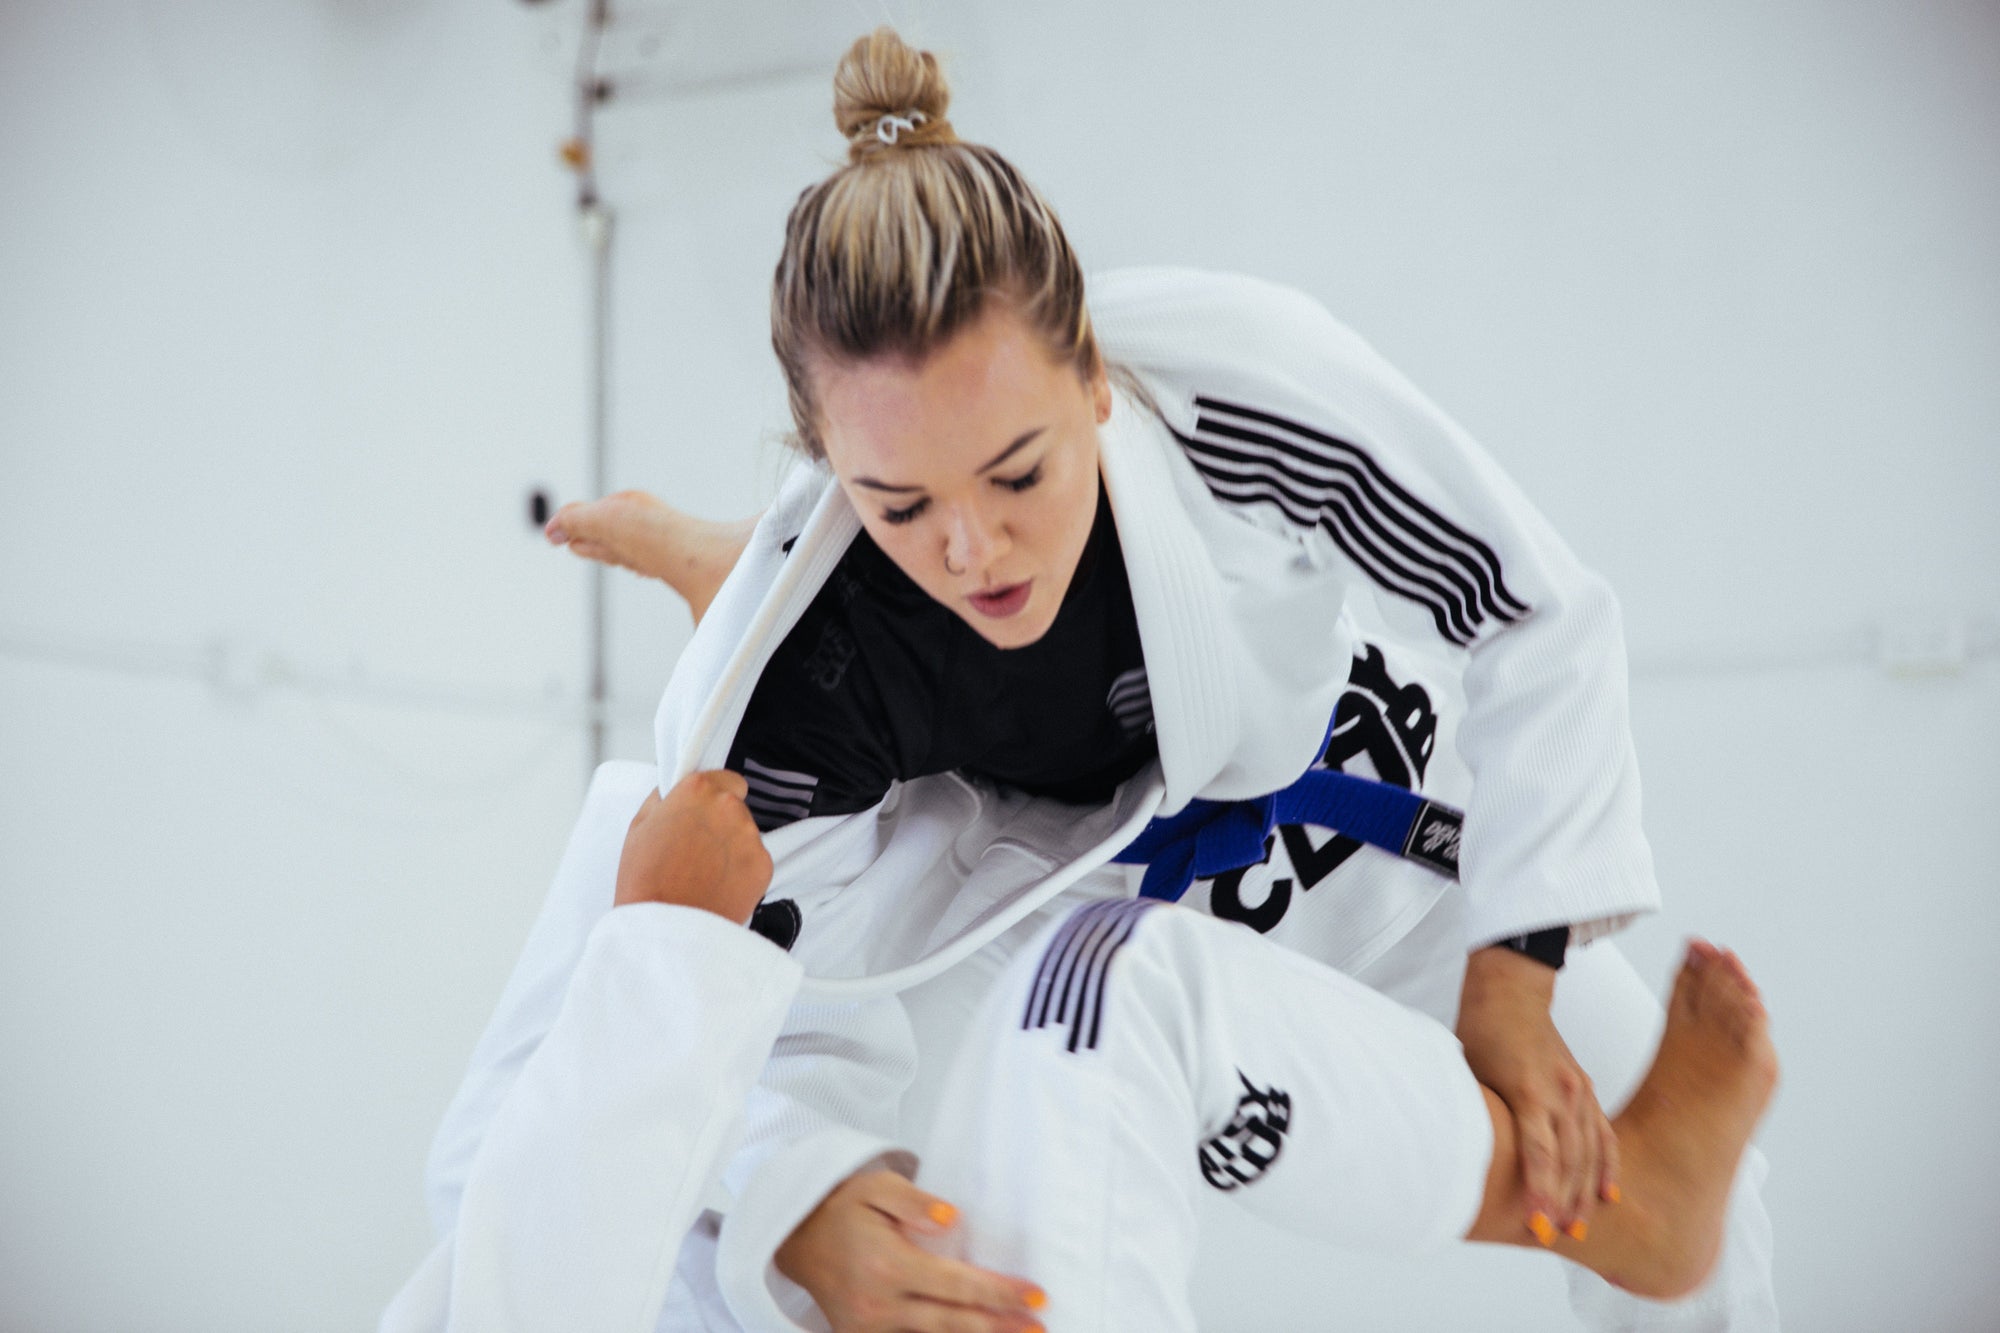 How Do I Start Doing Brazilian Jiu Jitsu?